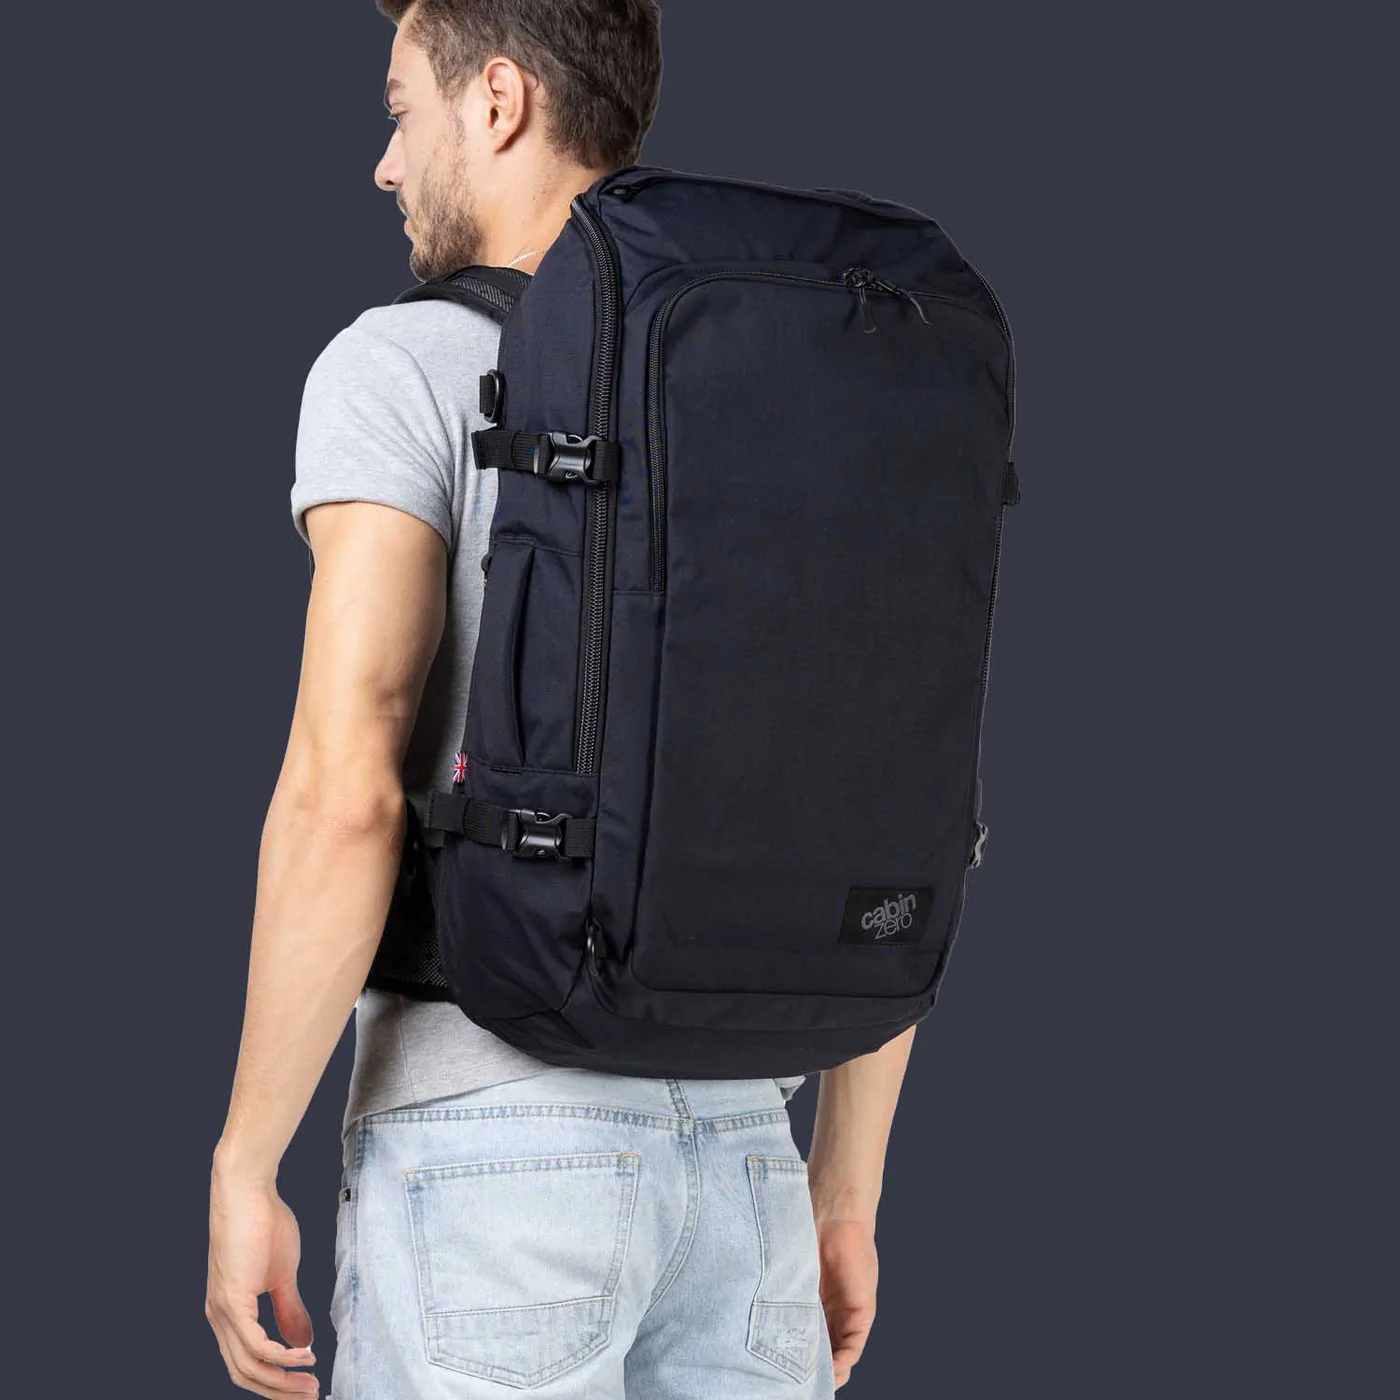 CabinZero - ADV Pro Adventure Cabin Backpack